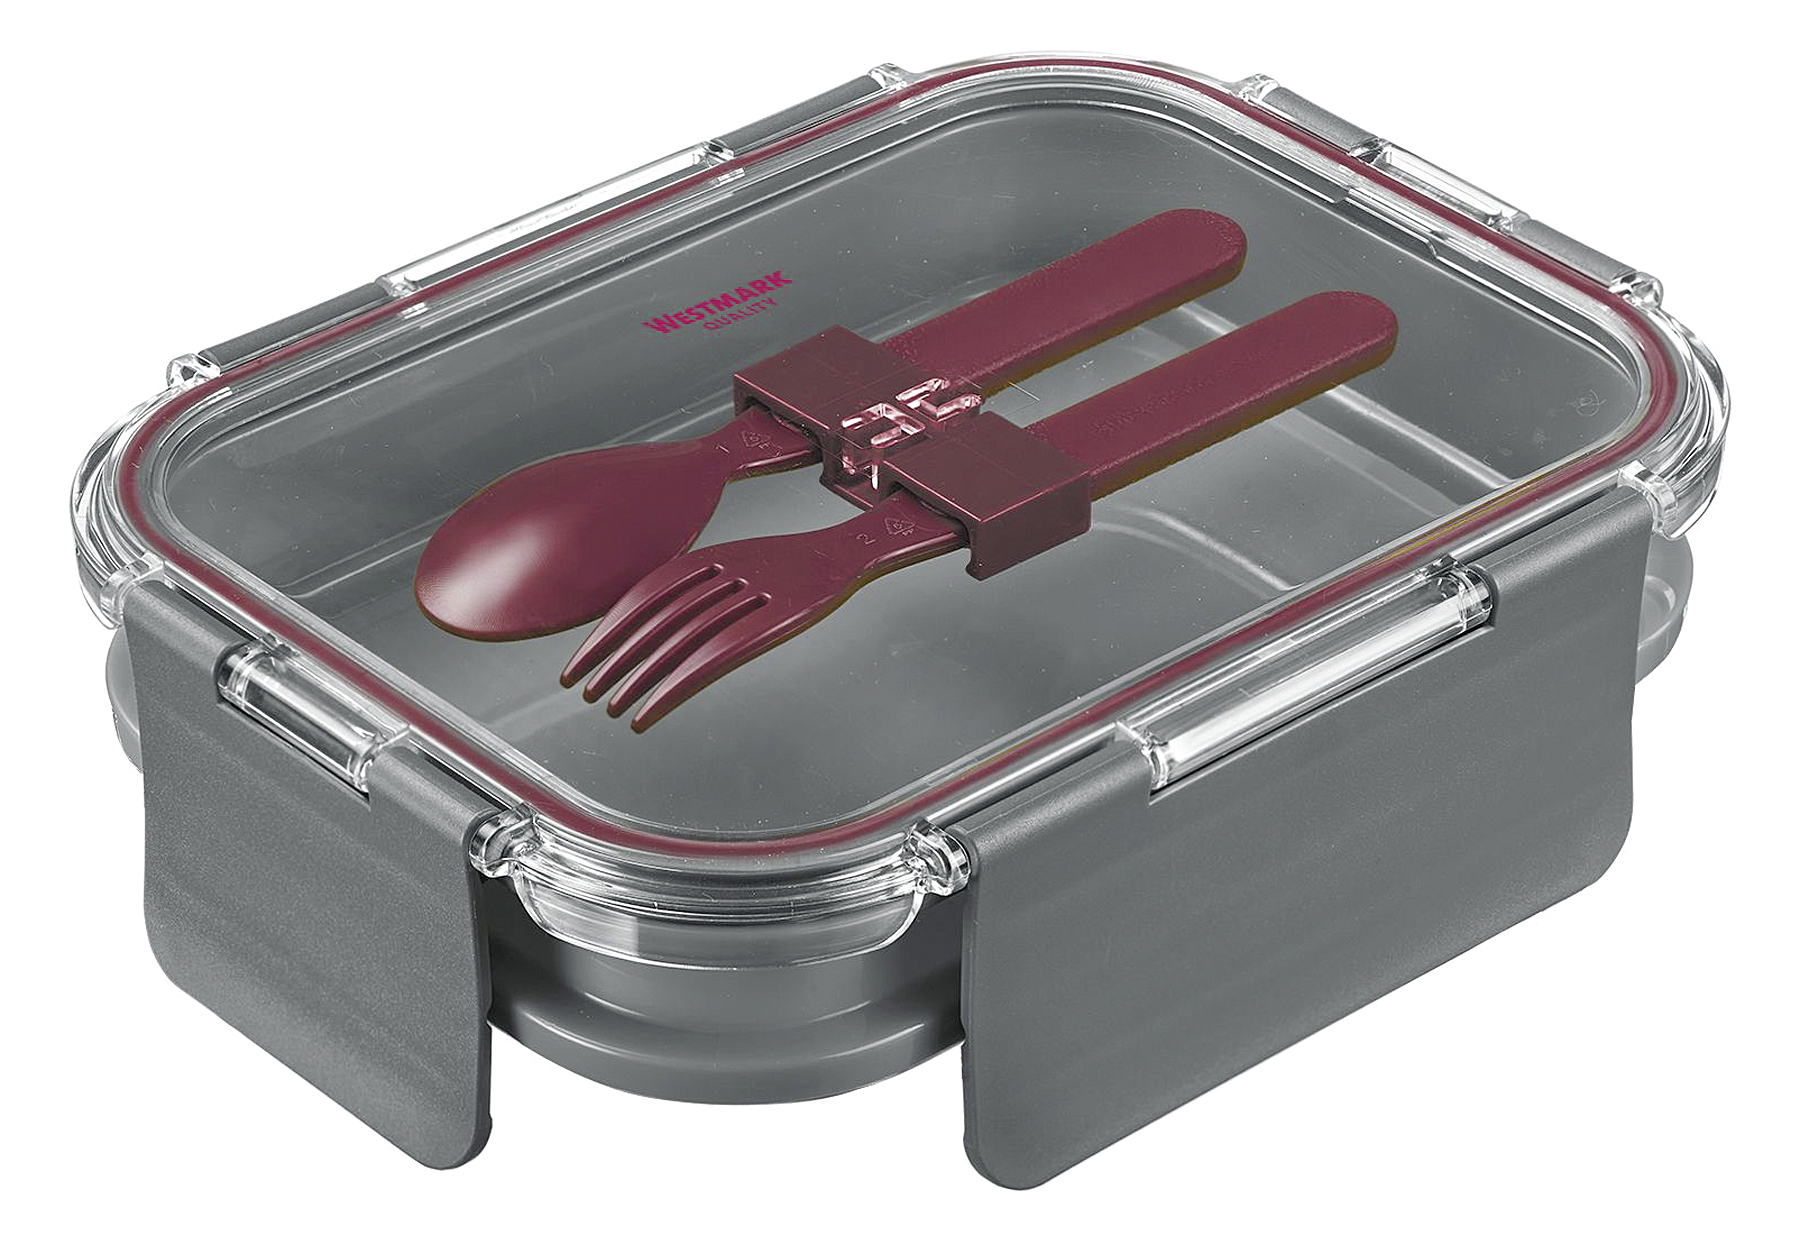 WESTMARK Lunch Box/Speisebehälter Comfort 1740ml anthrazit